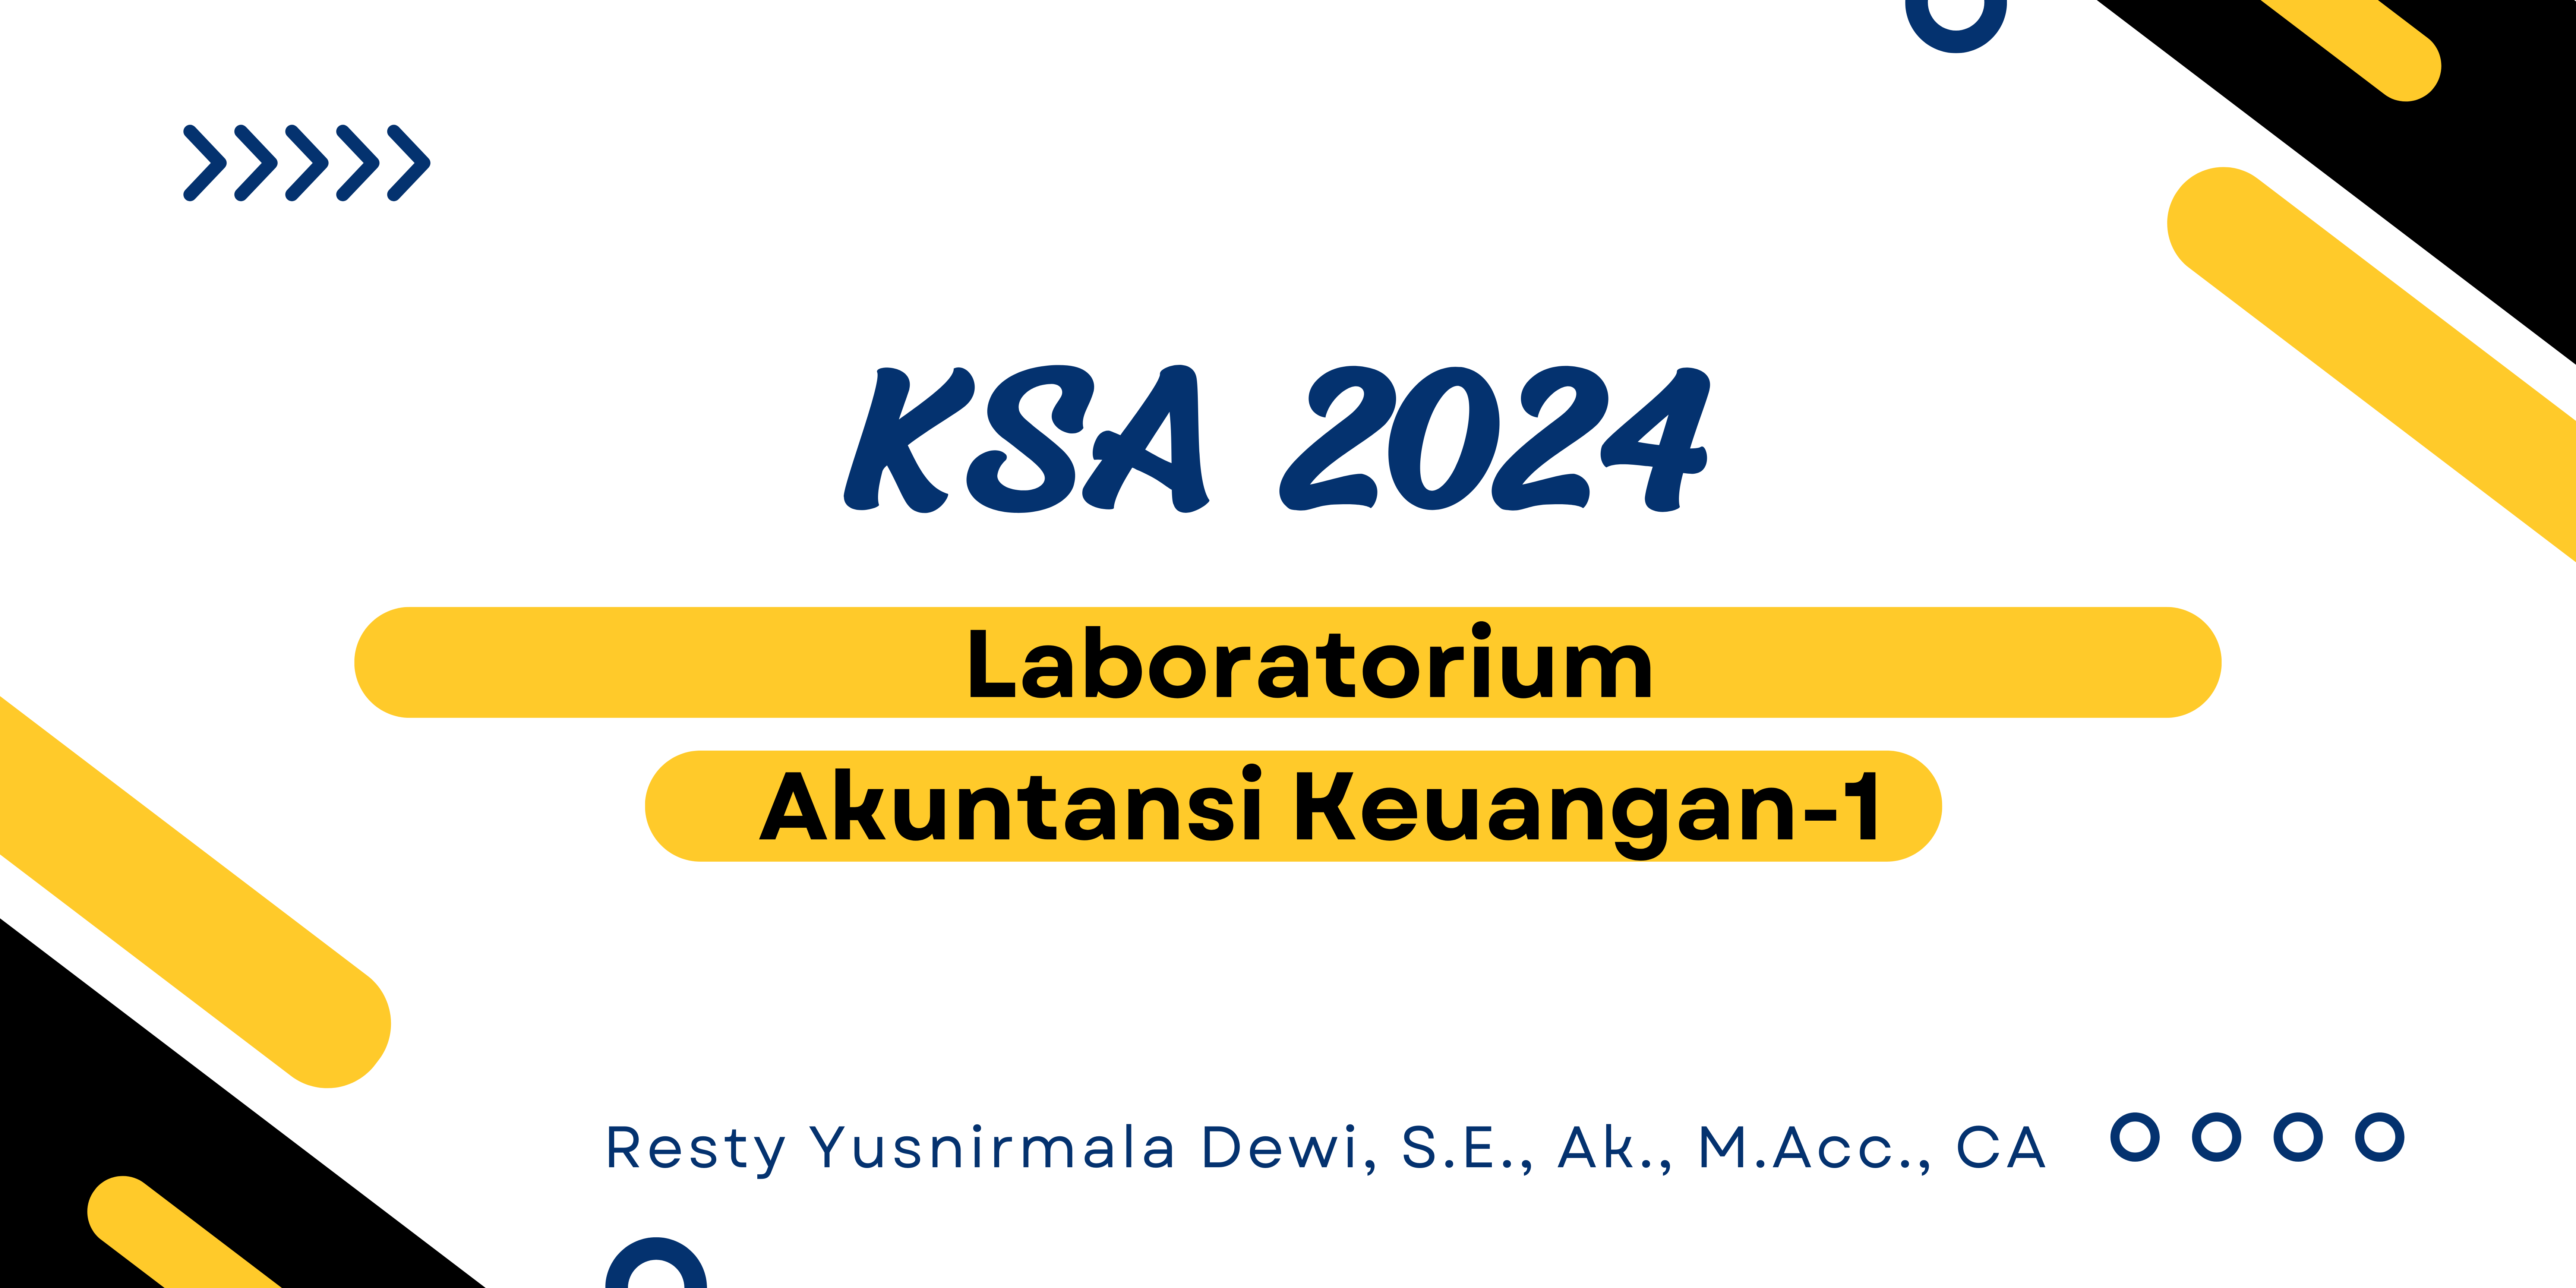 LAB.AKUNTANSI KEUANGAN-1 (KSA 2024)